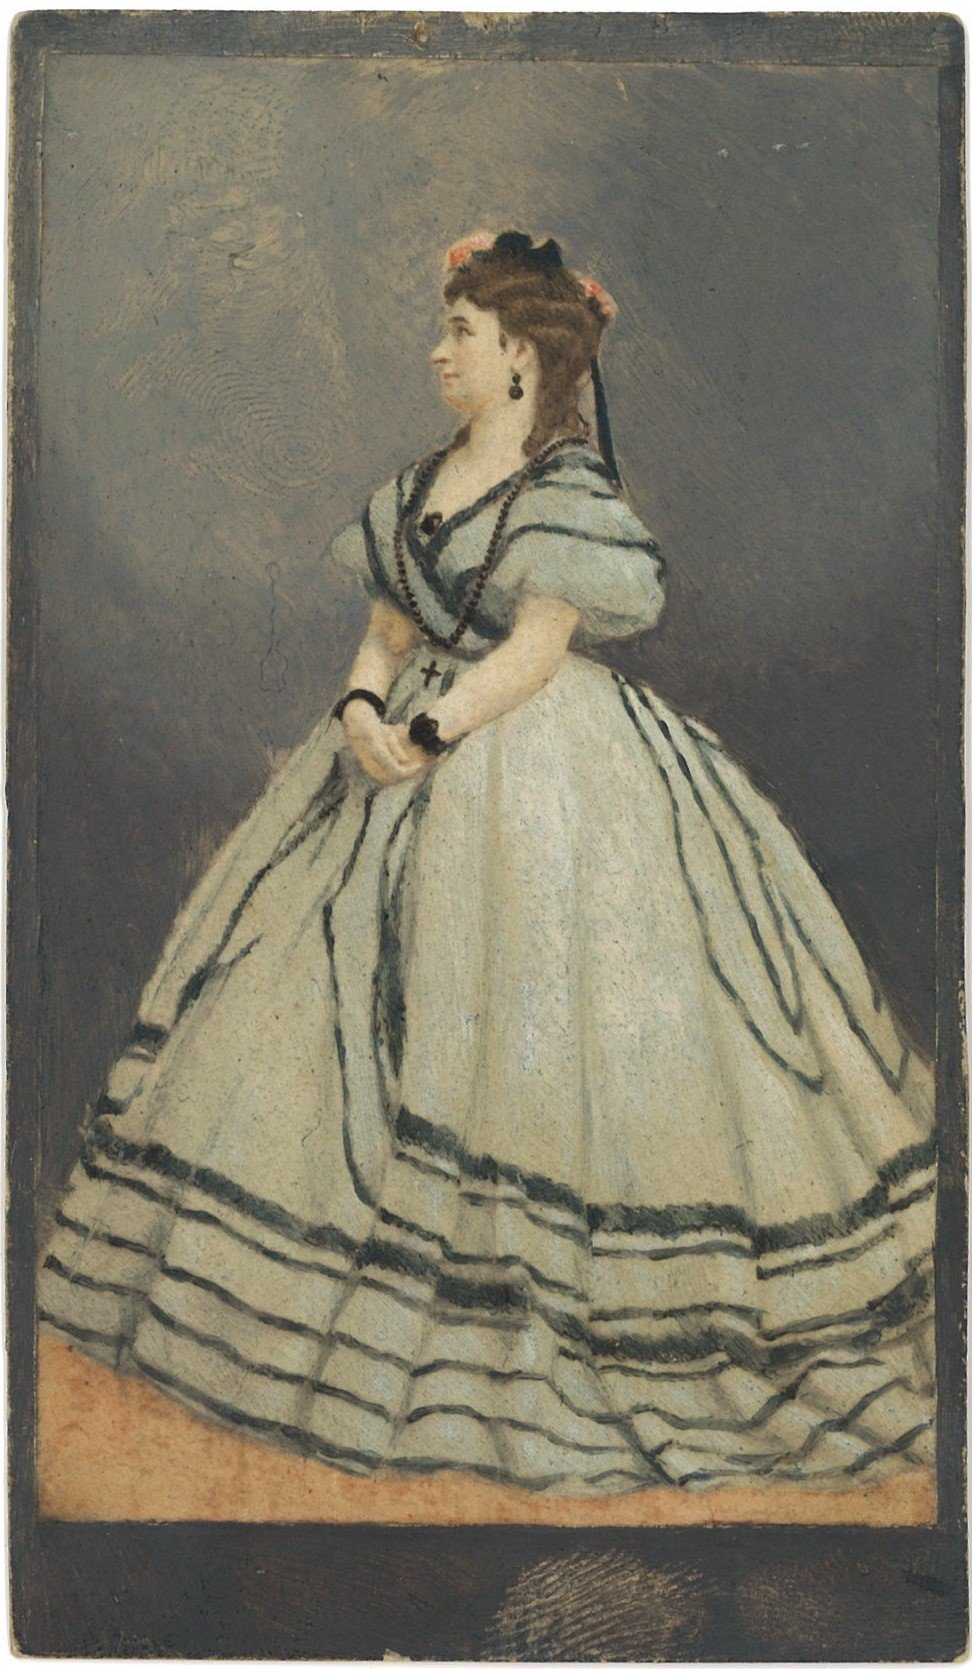 Wallner, Livia (1859-1941), Schauspielerin (Landesgeschichtliche Vereinigung für die Mark Brandenburg e.V., Archiv CC BY)